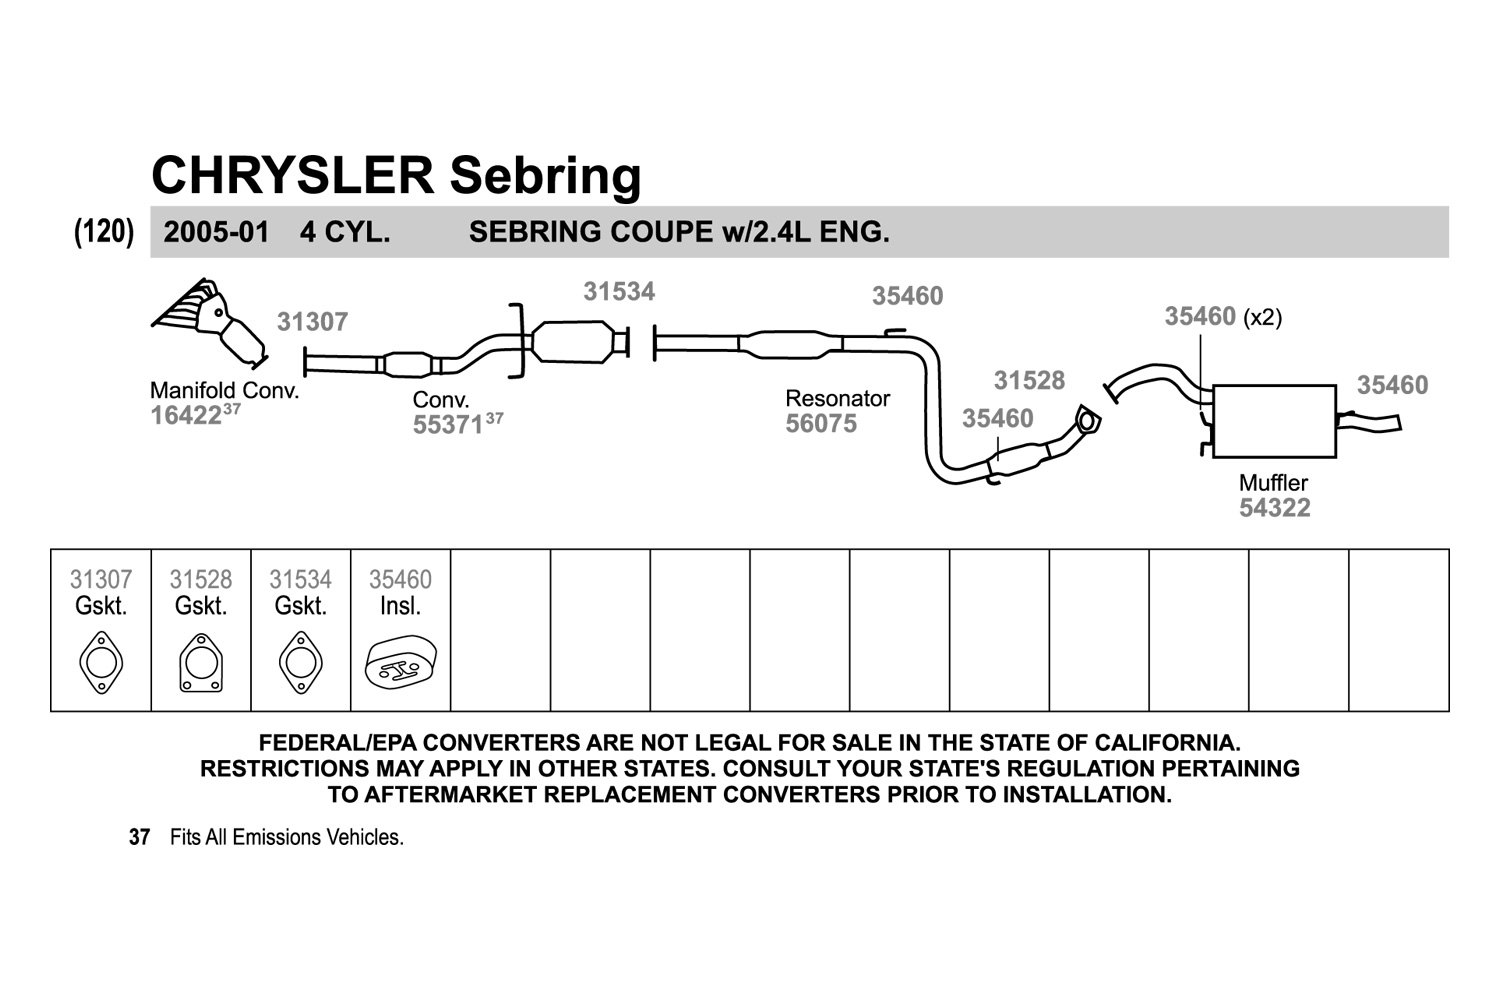 Exhaust Muffler Assembly-Quiet-Flow SS Muffler Assembly Walker 54322